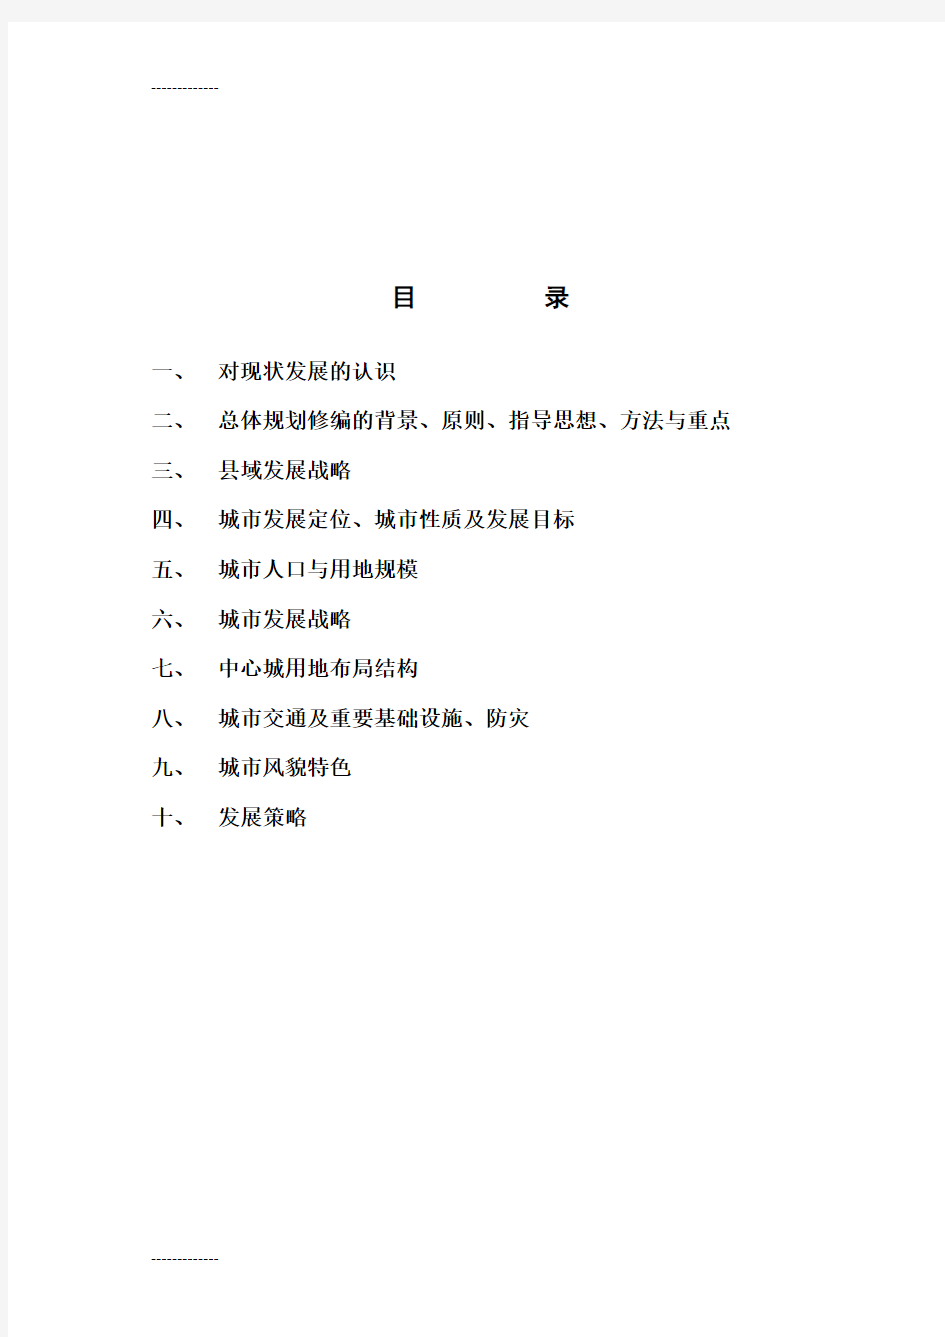 (整理)博兴县城市总体规划纲要2004年